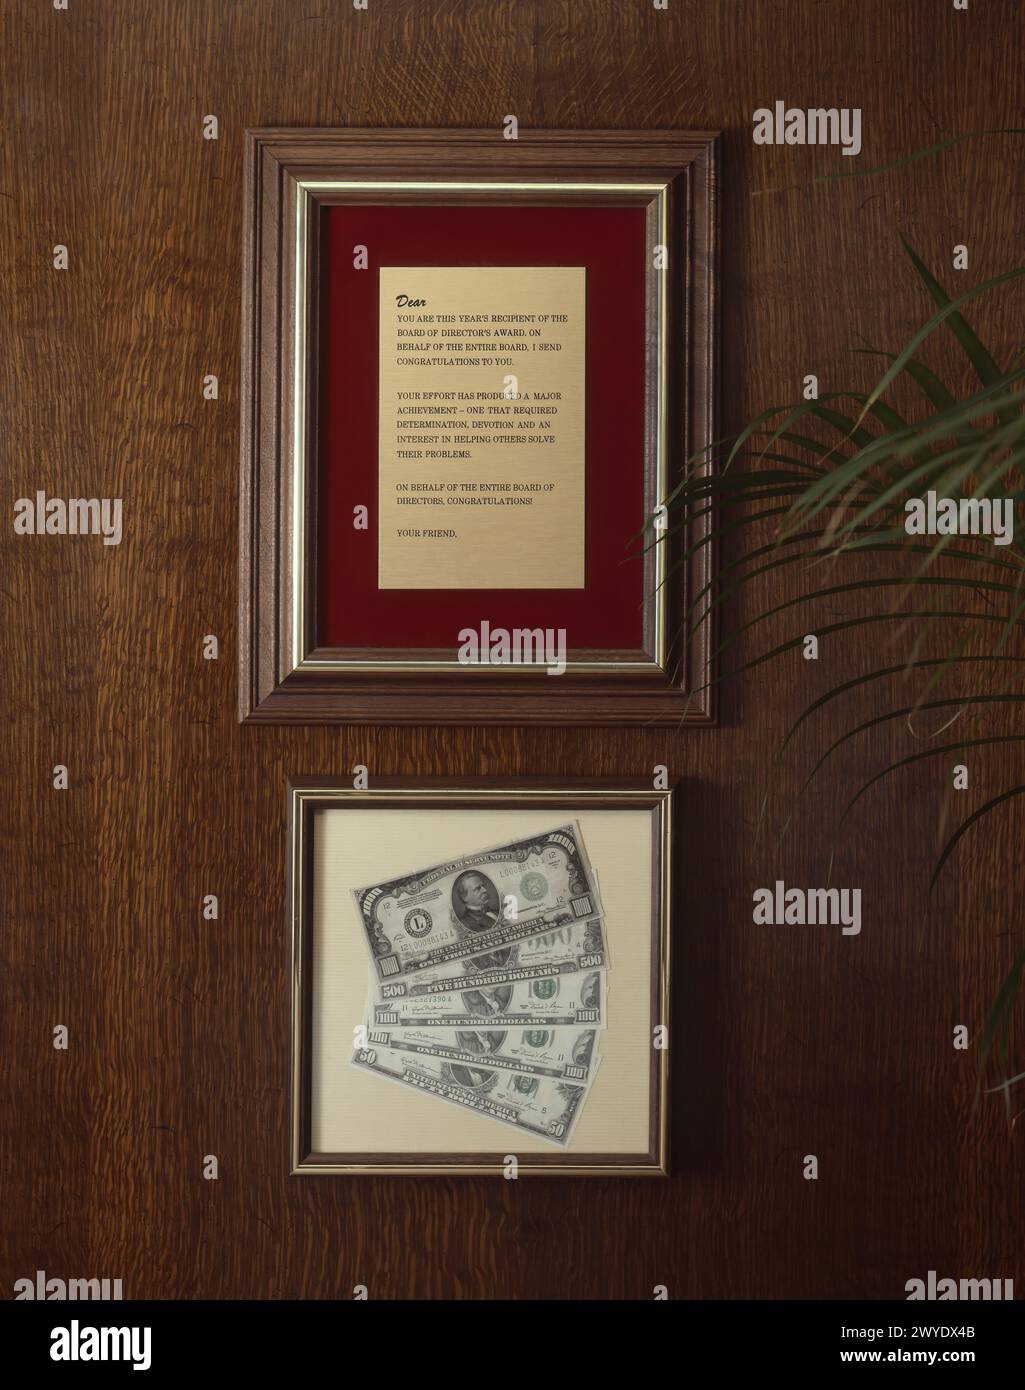 Company framed award with money Stock Photo